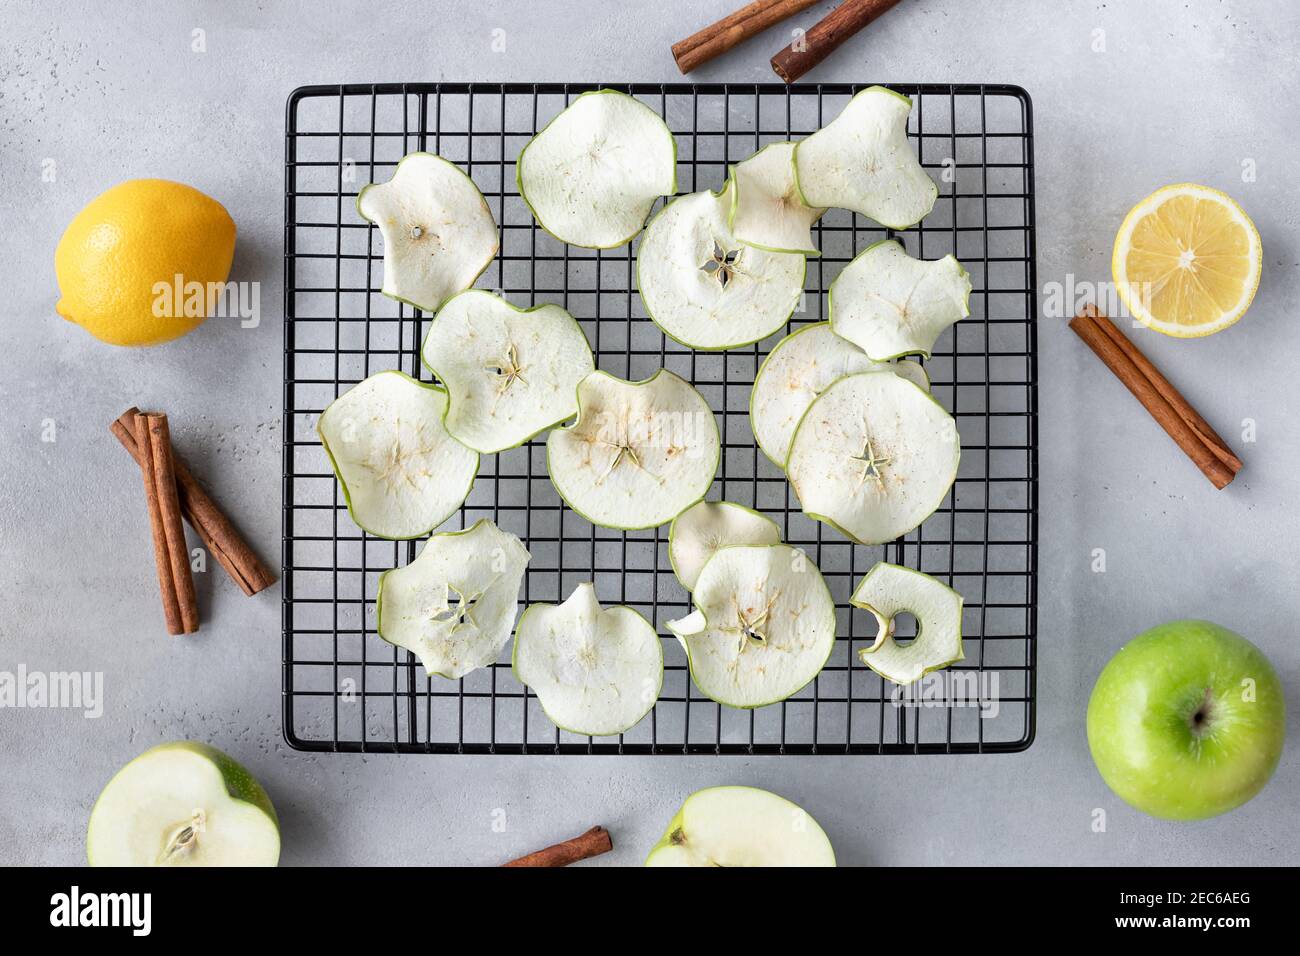 composition de la couche plate avec des chips de pomme déshydratées, des pommes, des citrons et des bâtons de cannelle Banque D'Images